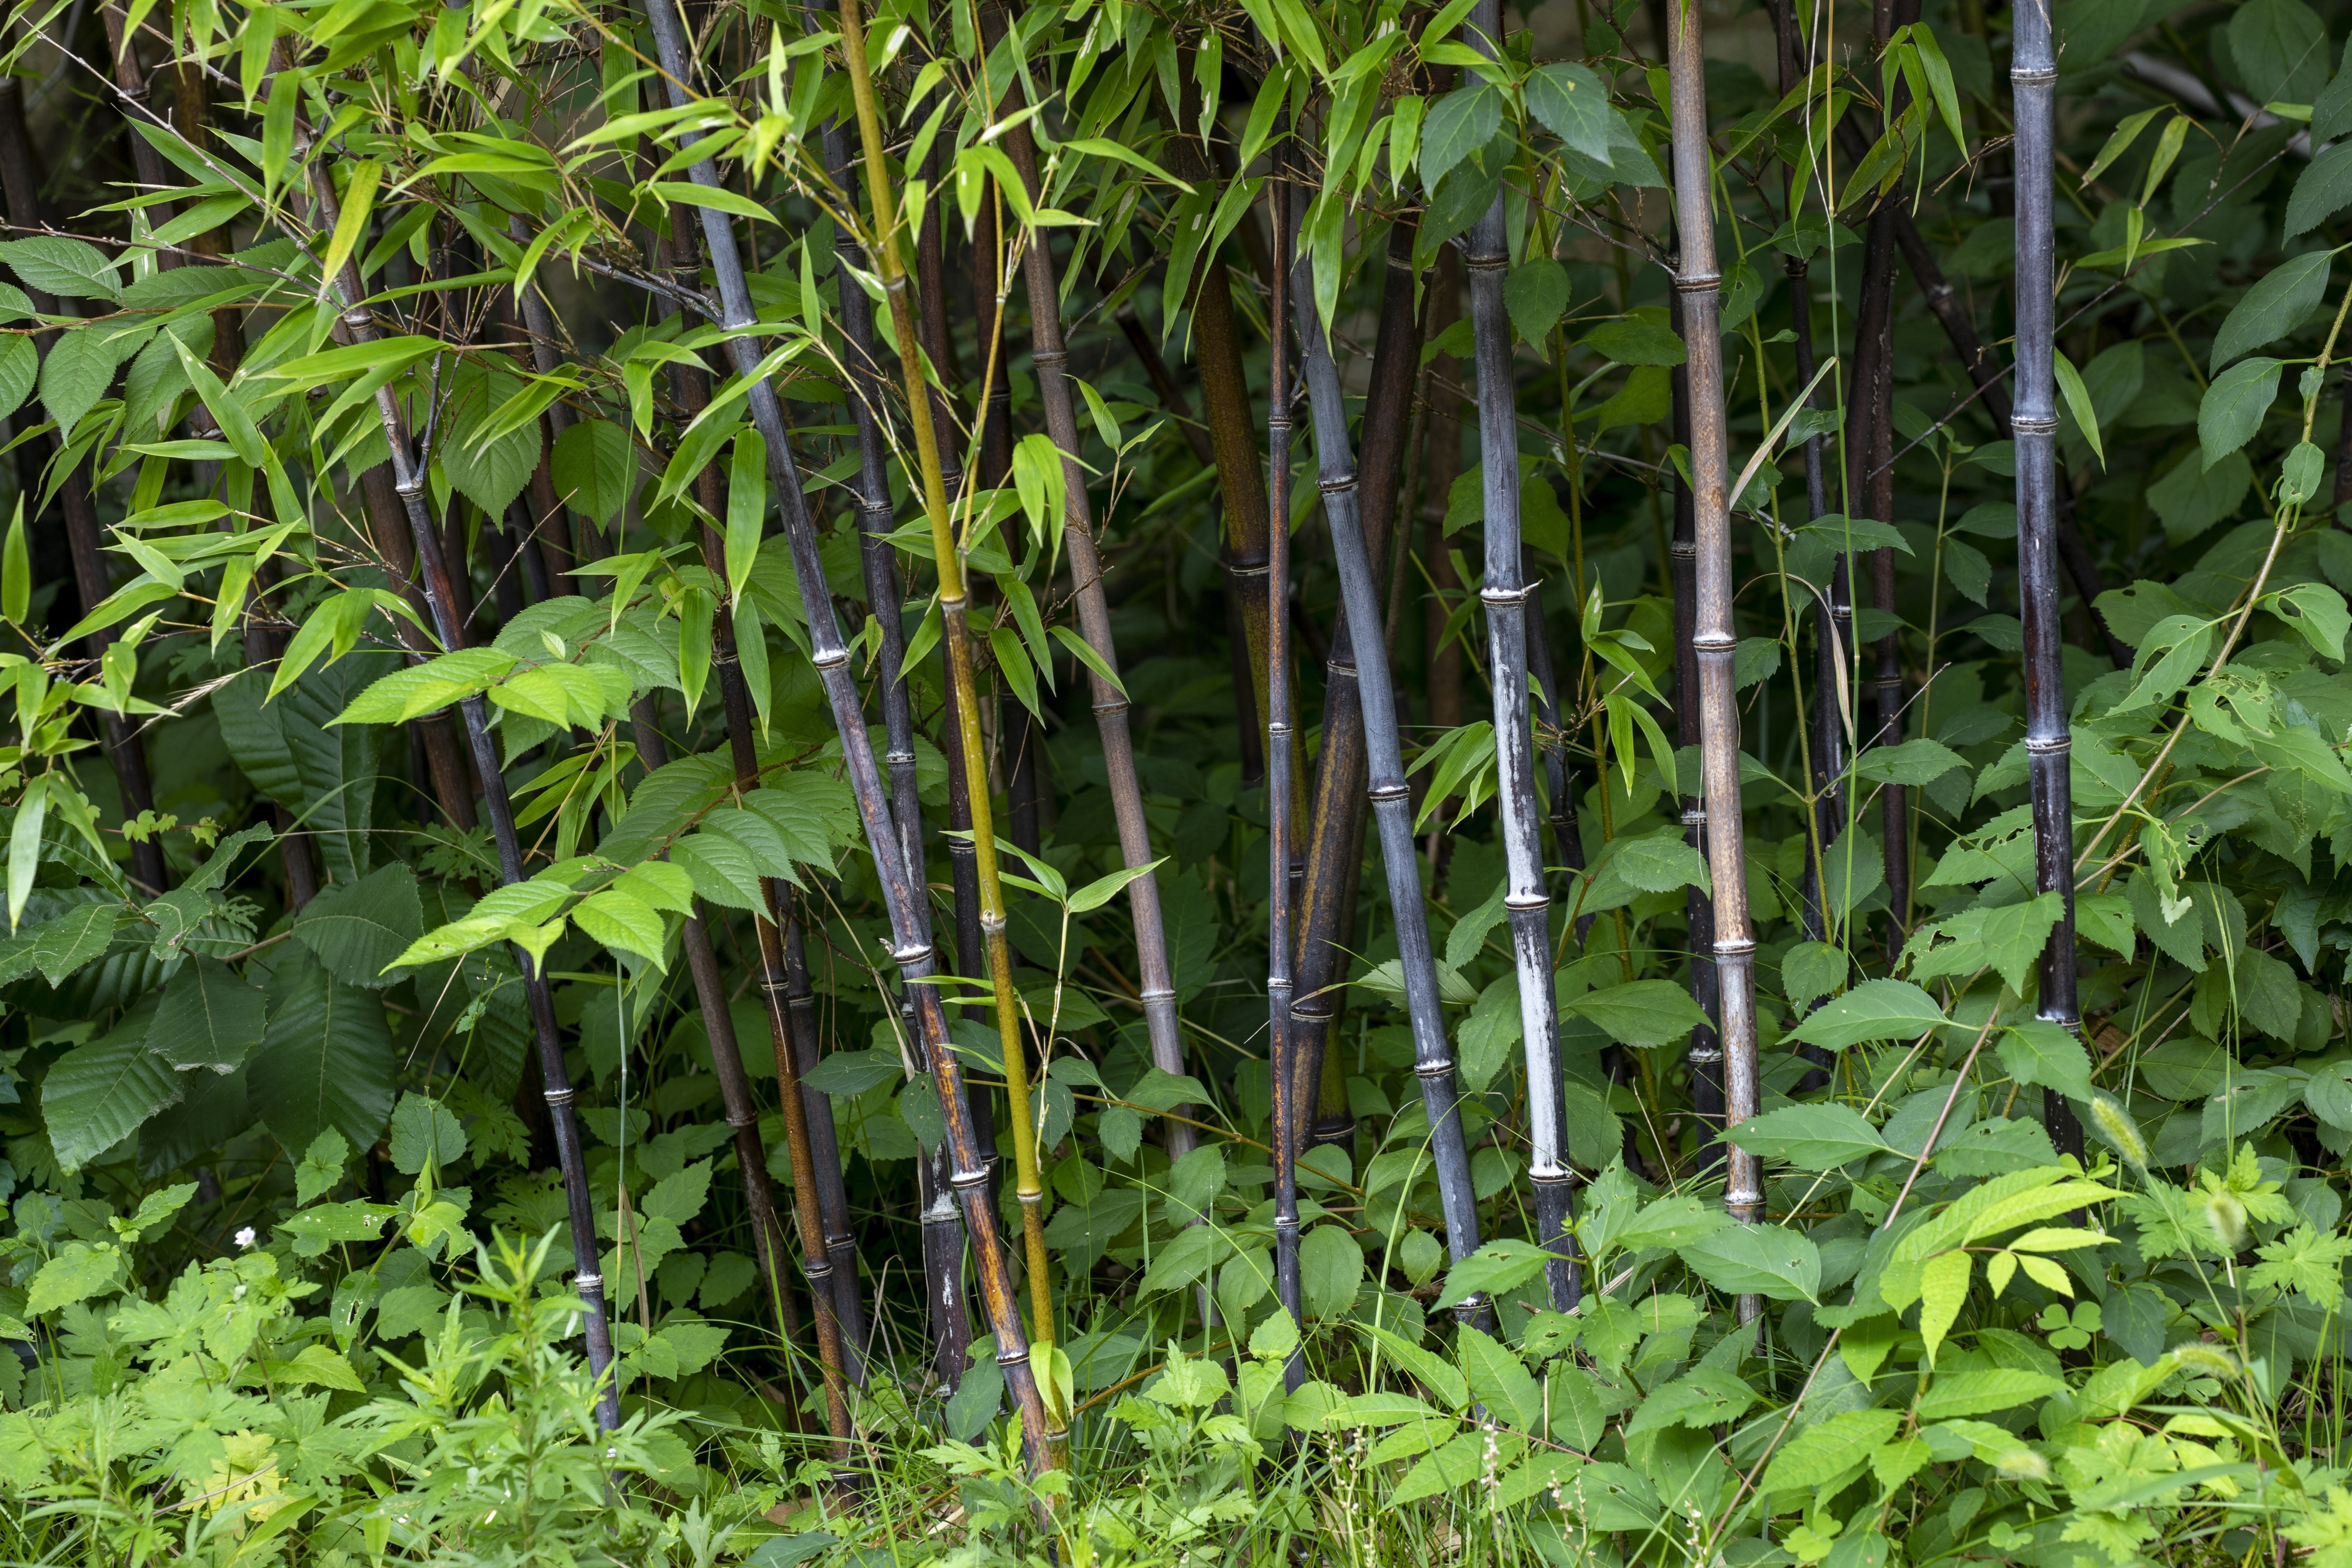 Le bambou noir, un décor original pour votre jardin. Copyright (c) 2022 Stock for you/Shutterstock.